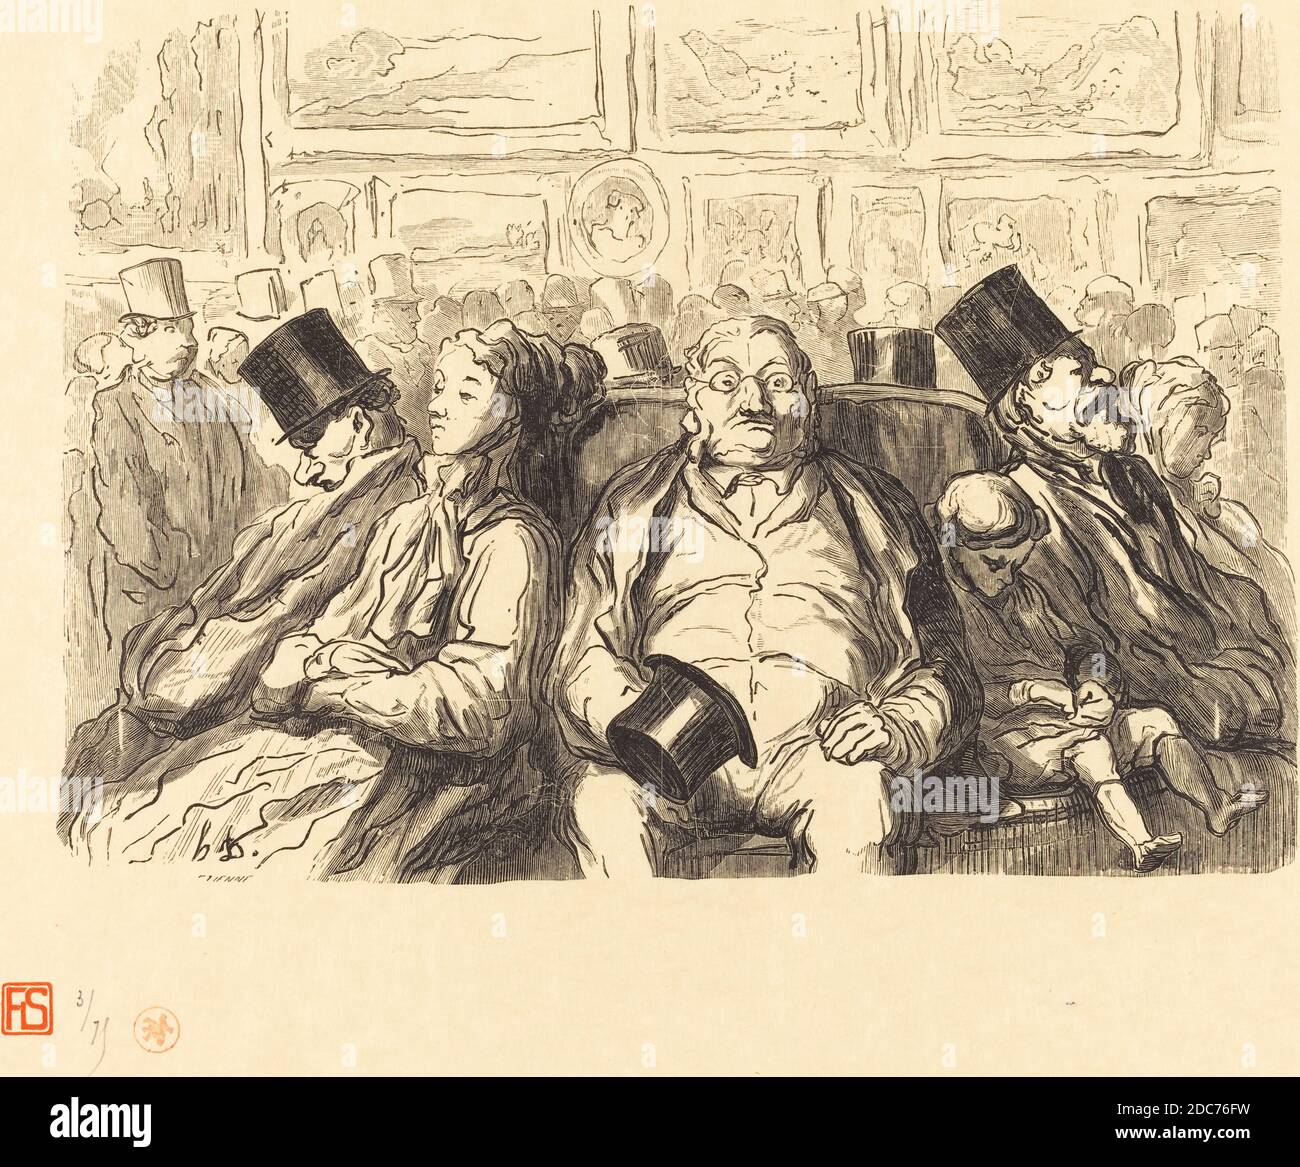 Etienne, (artist), French, active 19th century, Honoré Daumier, (artist  after), French, 1808 - 1879, Exposition des Beaux-Arts - Dans le salon  carre - Un Instant de repos, H. Daumier, tirage unique de